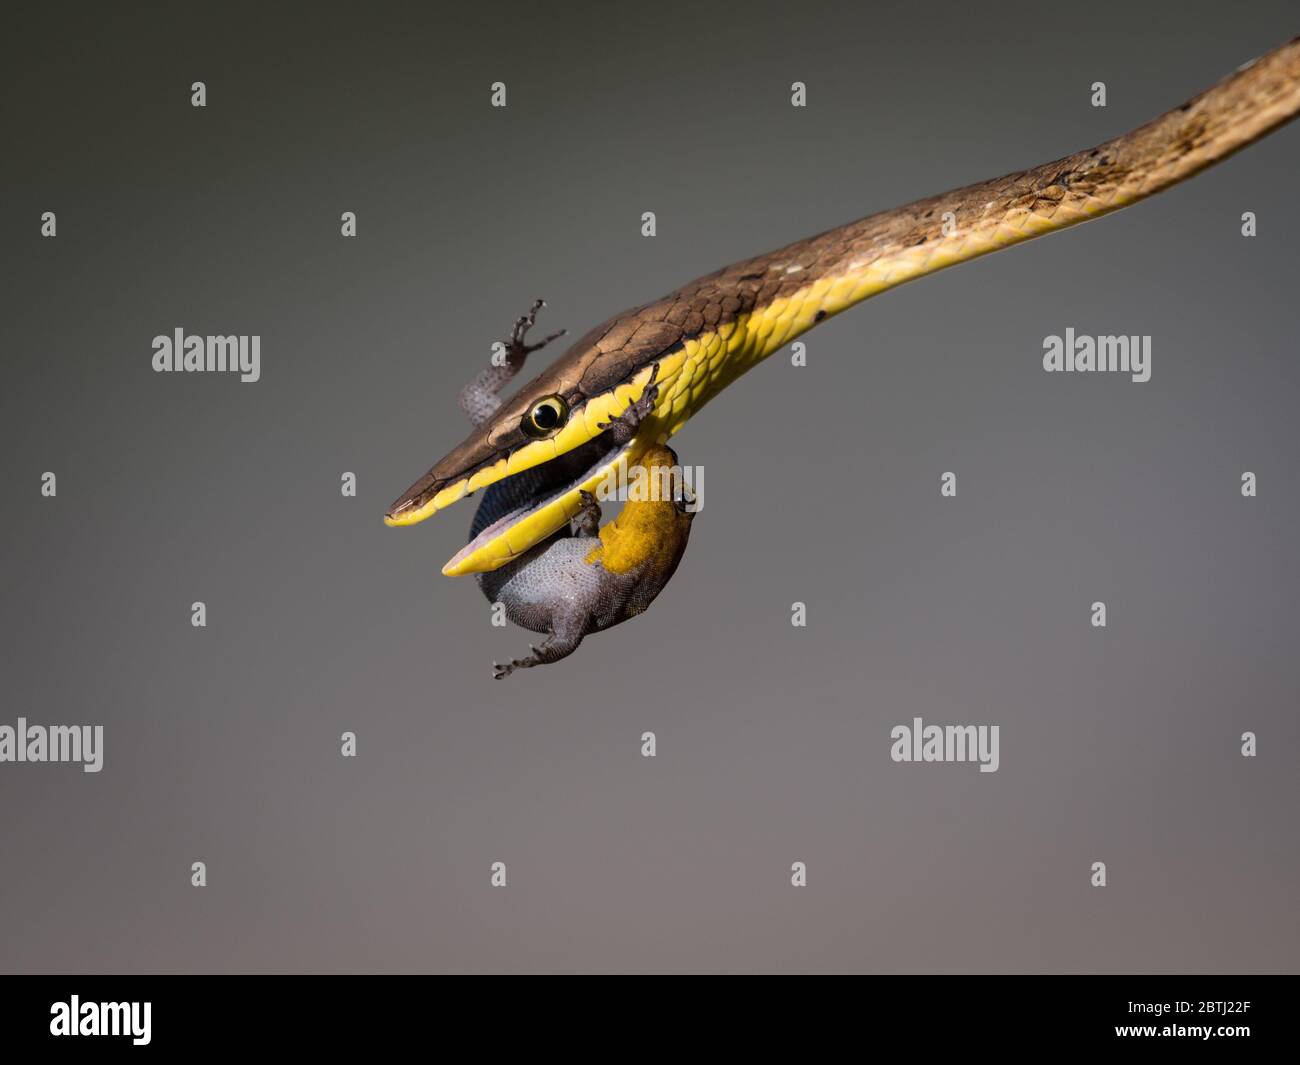 Eine Pferdepeitschenschlange versucht, einen Gecko zu essen, der sich um sein Leben kämpft und die Schlange beißt. Stockfoto